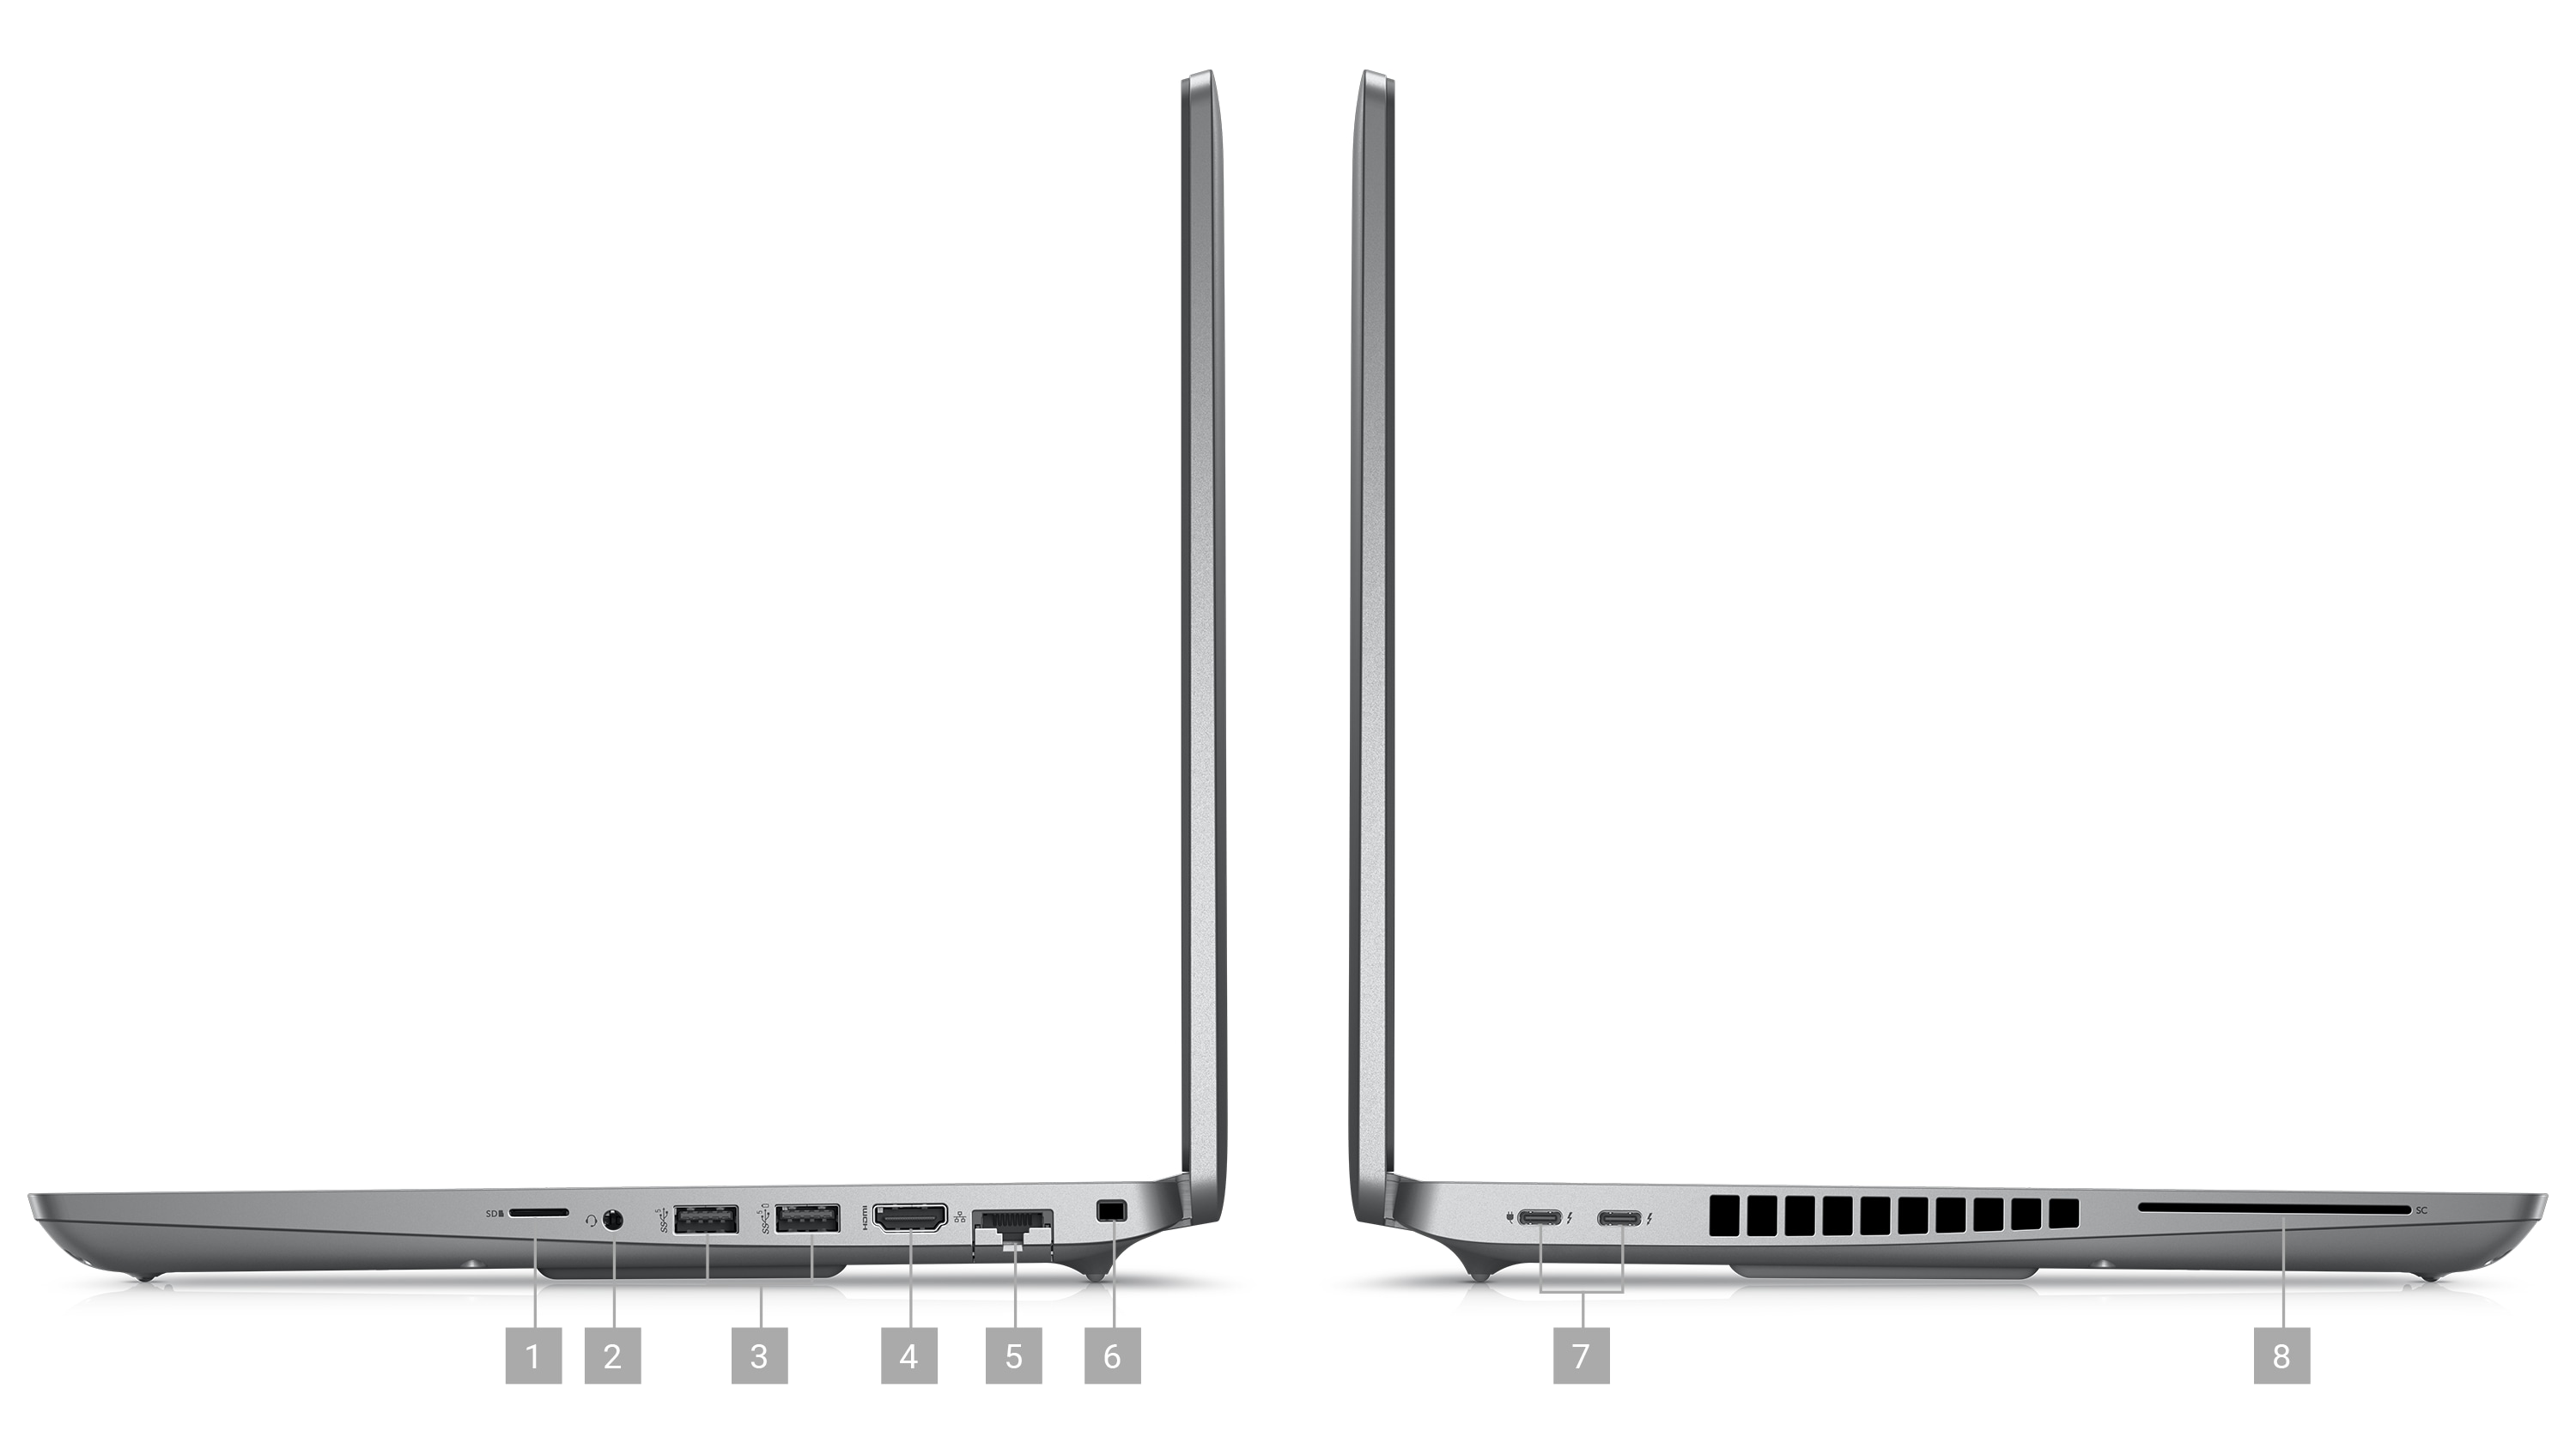 Image de deux stations de travail mobiles Dell Precision 3571 placées latéralement, illustrant les ports et les logements sur le côté des produits.